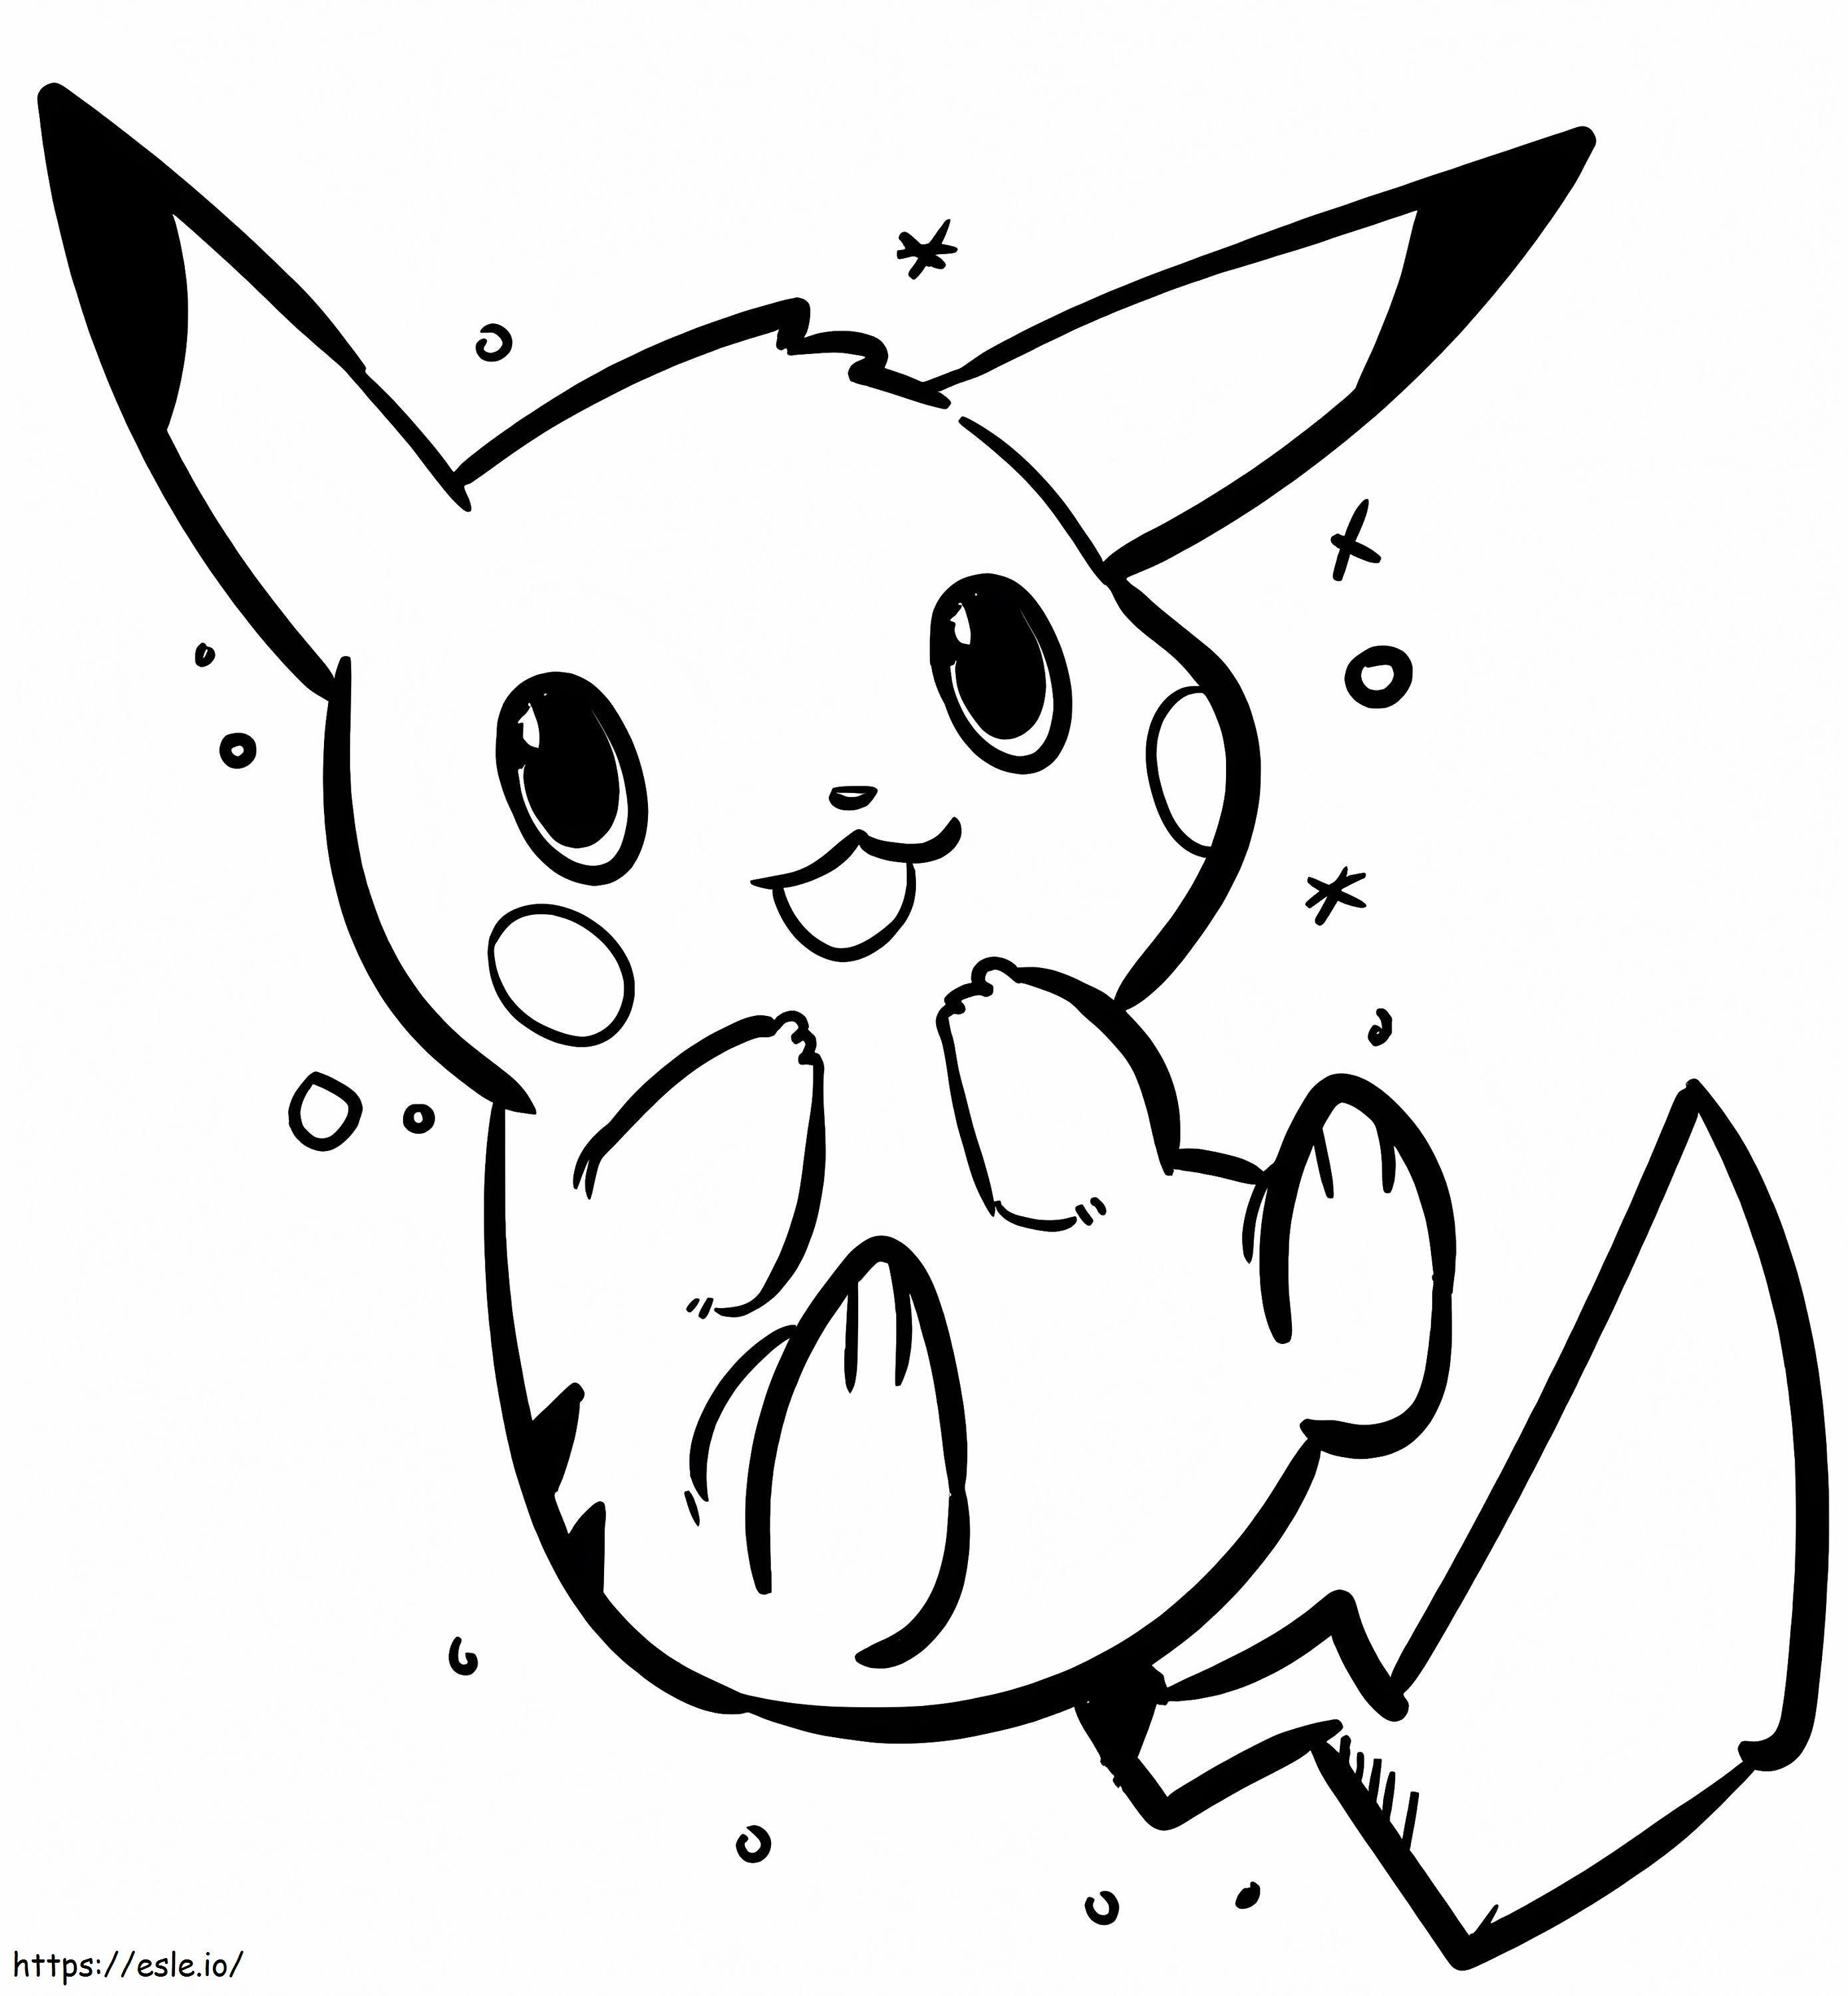 Disegnare Baby Pikachu da colorare